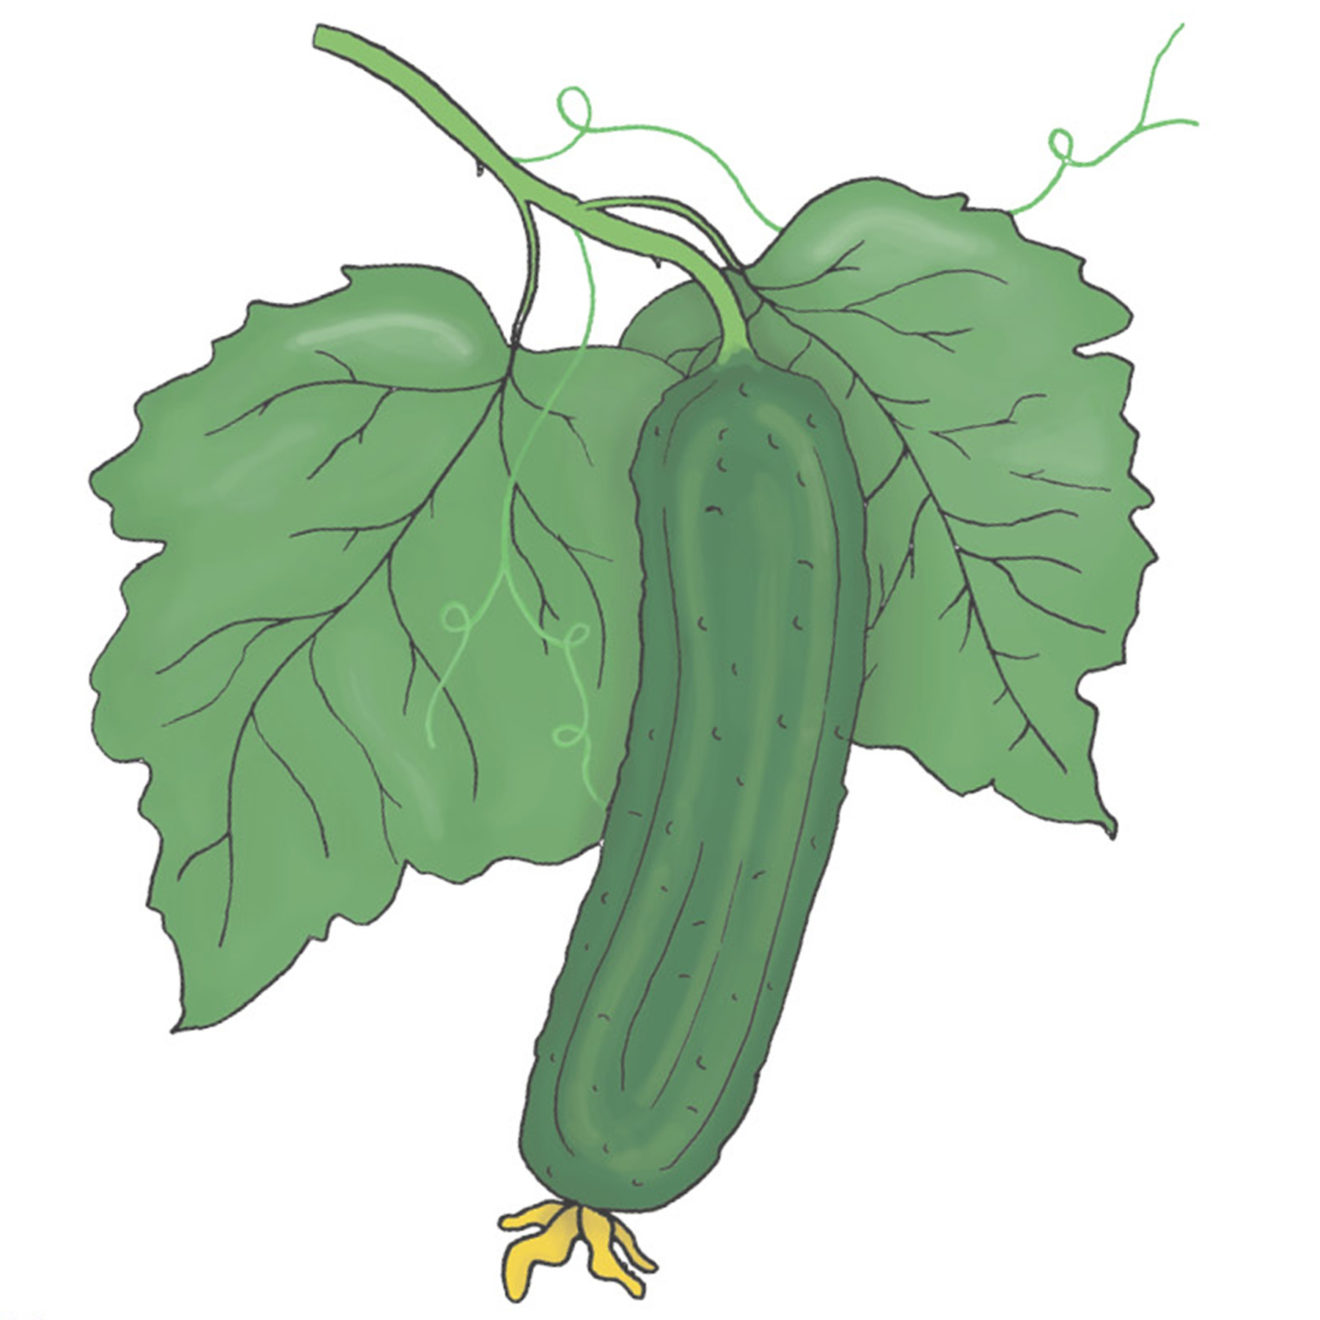 Skoleagurk - Beth Alpha - En lille og glat agurk med masser af crunch - Økologisk